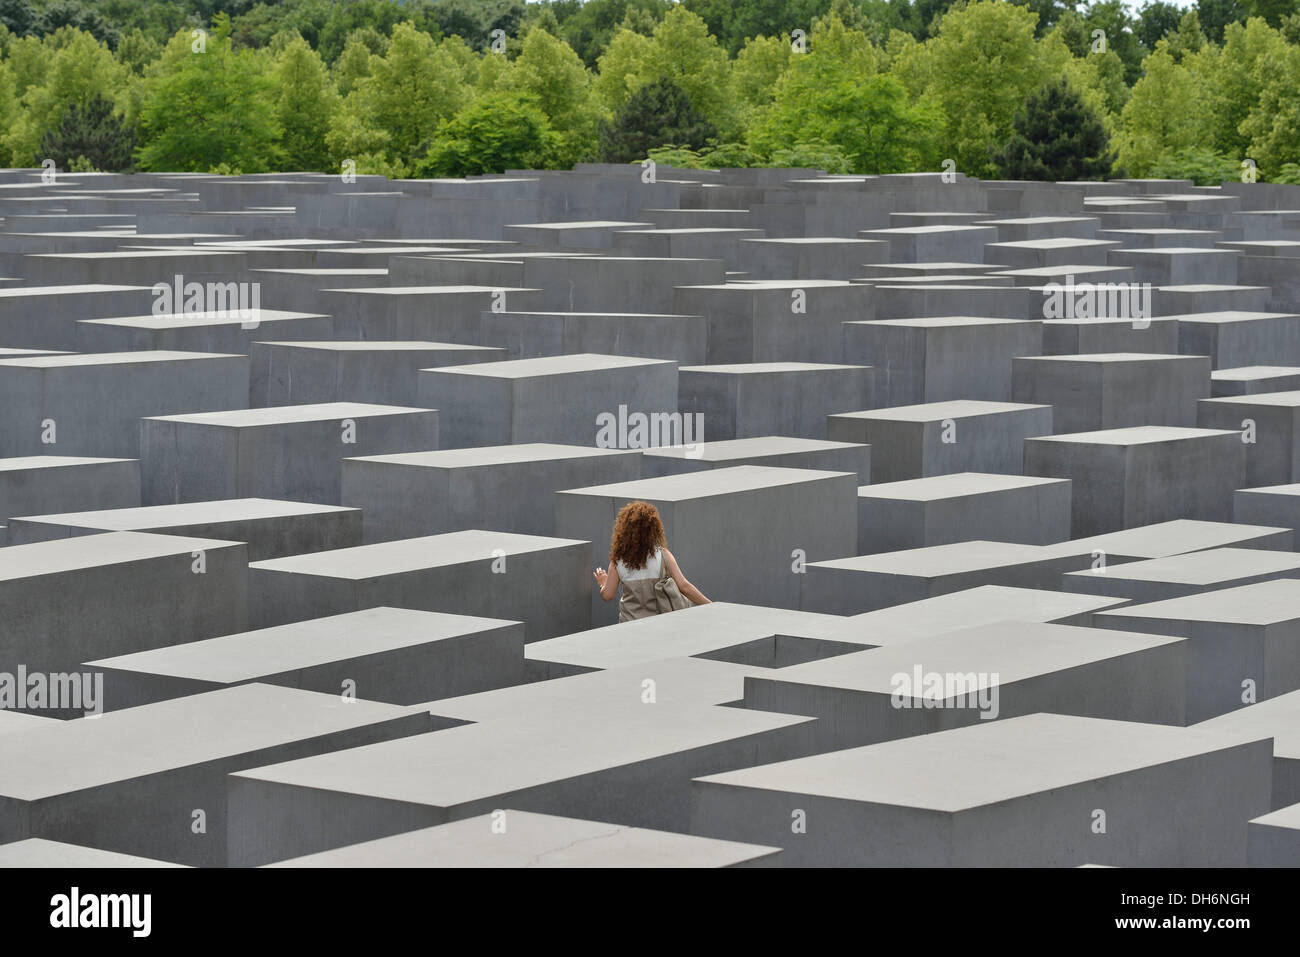 Berlin. L'Allemagne. Mémorial aux Juifs assassinés d'Europe / Holocaust Memorial, une femme seule se promène entre les stèles. Banque D'Images